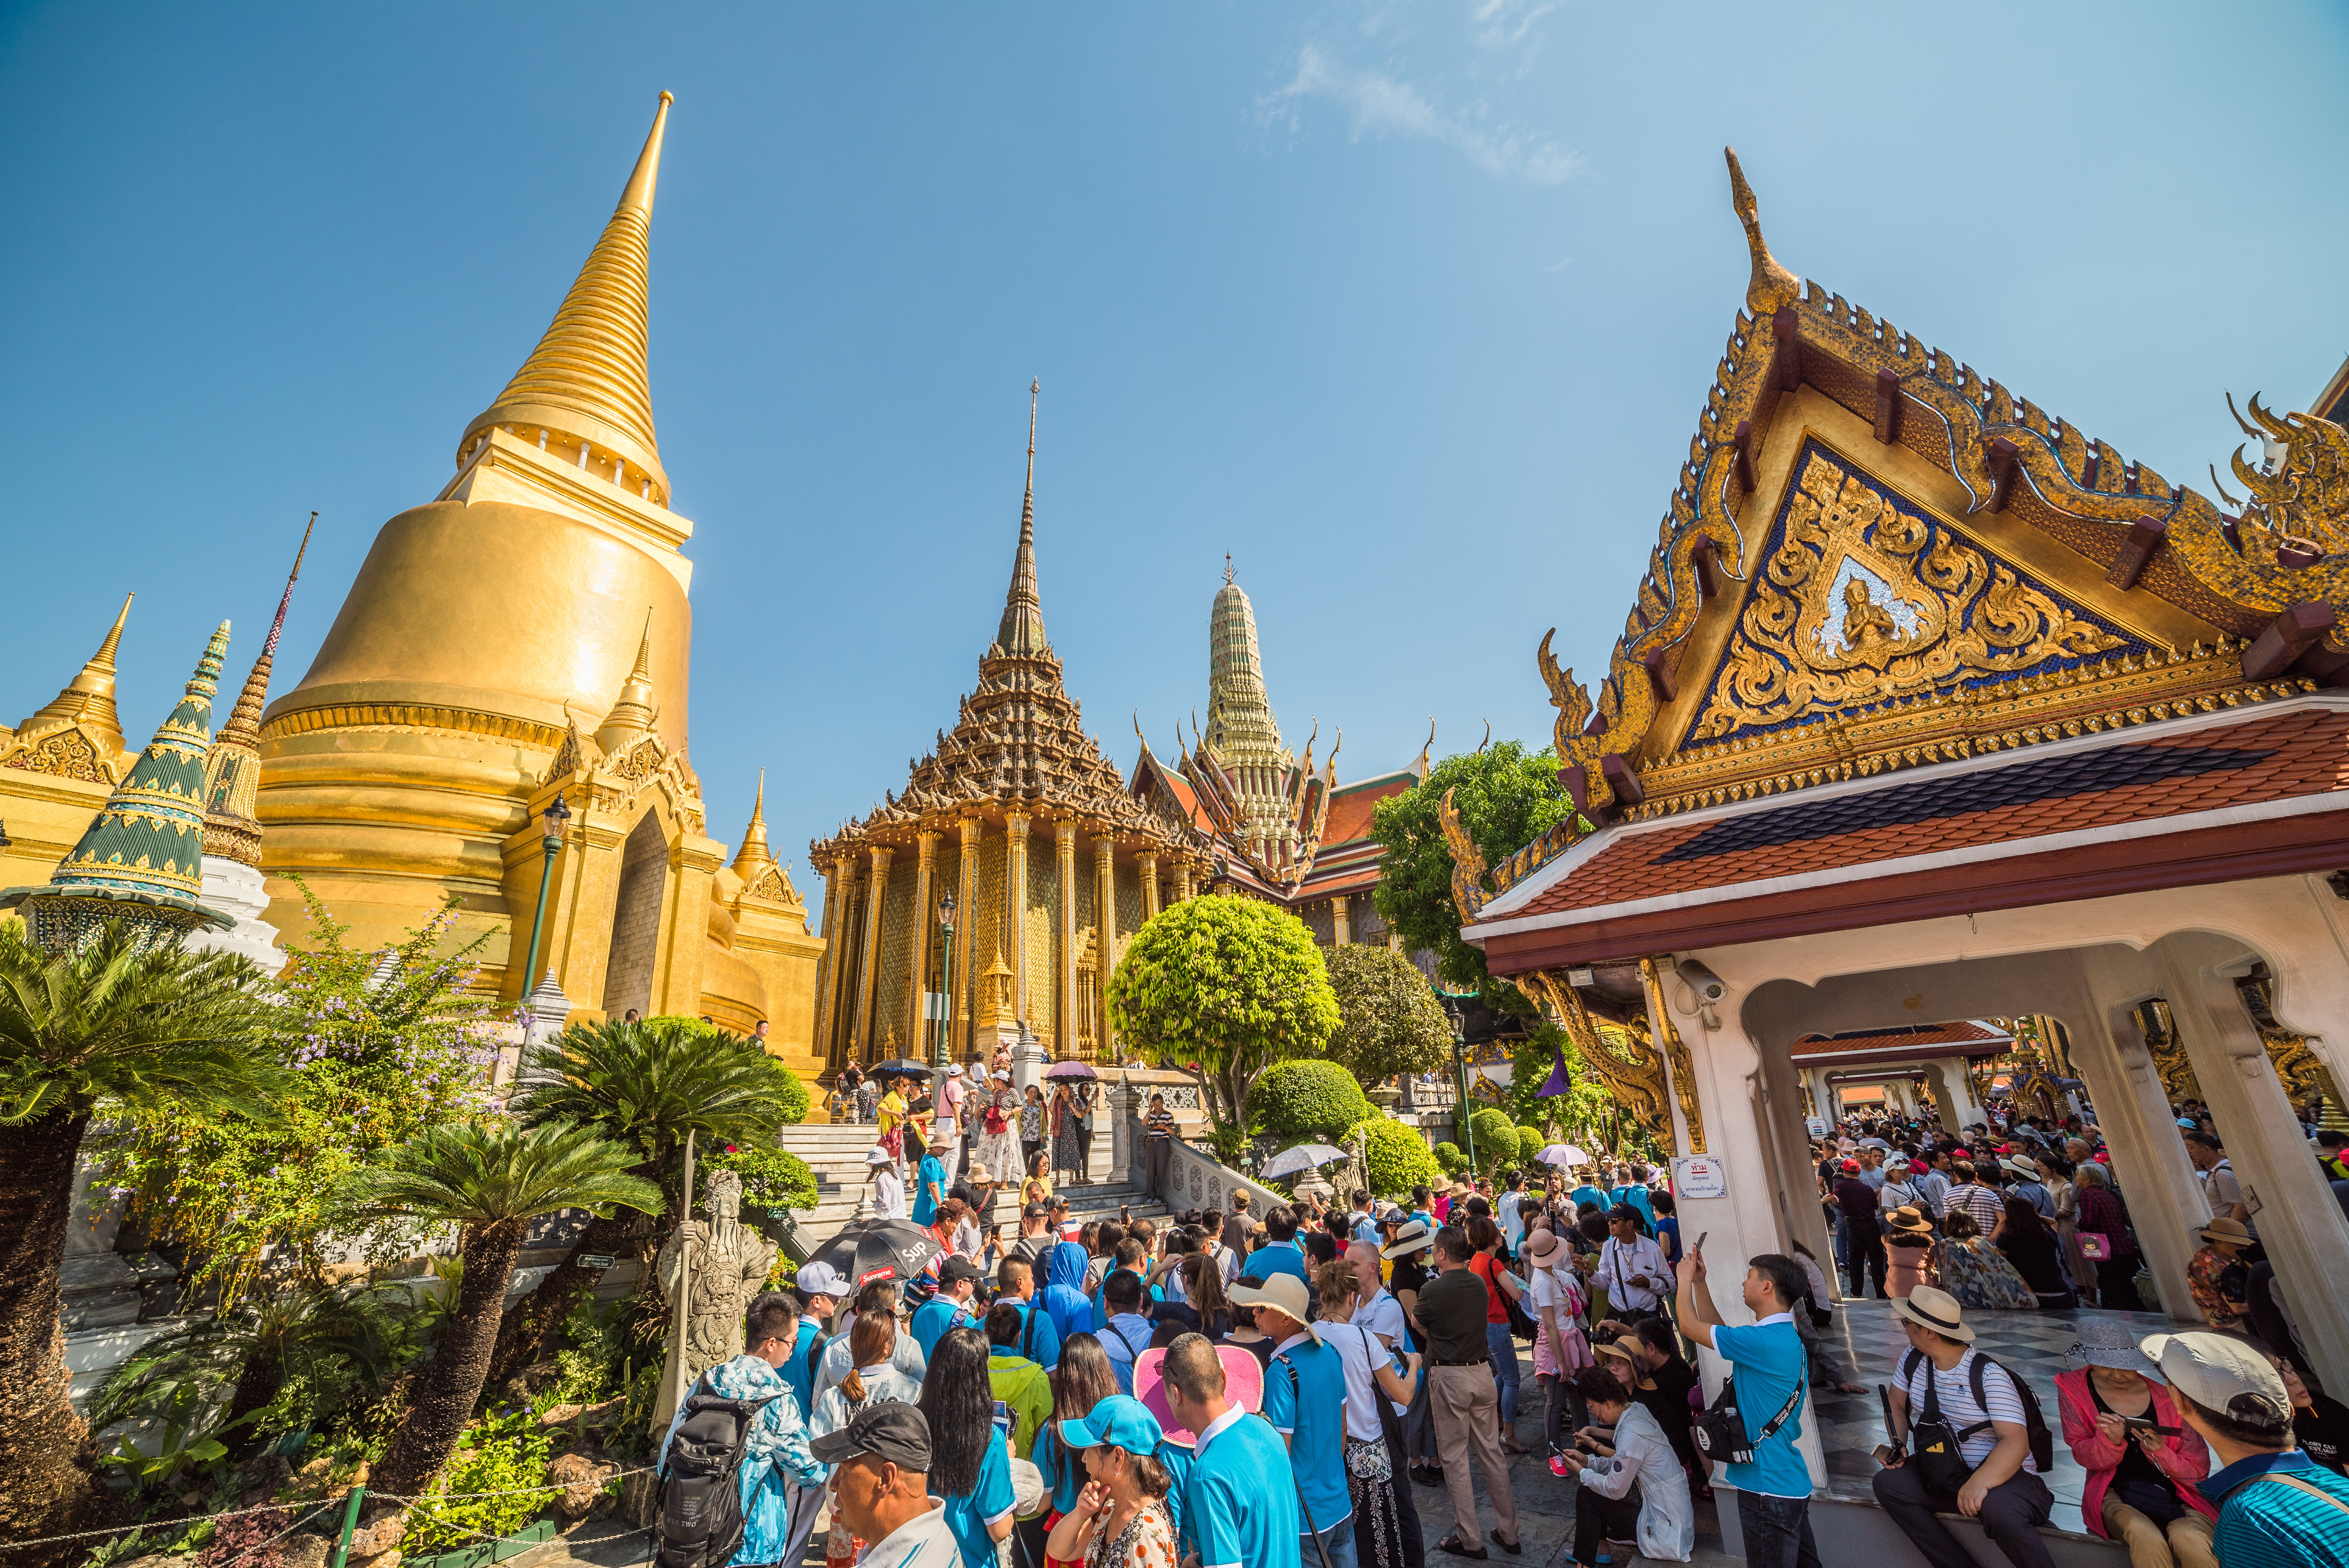 Many Tourists gather around Wat Phra Kaew, the Temple of Emerald Buddha at Bangkok's Grand Palace